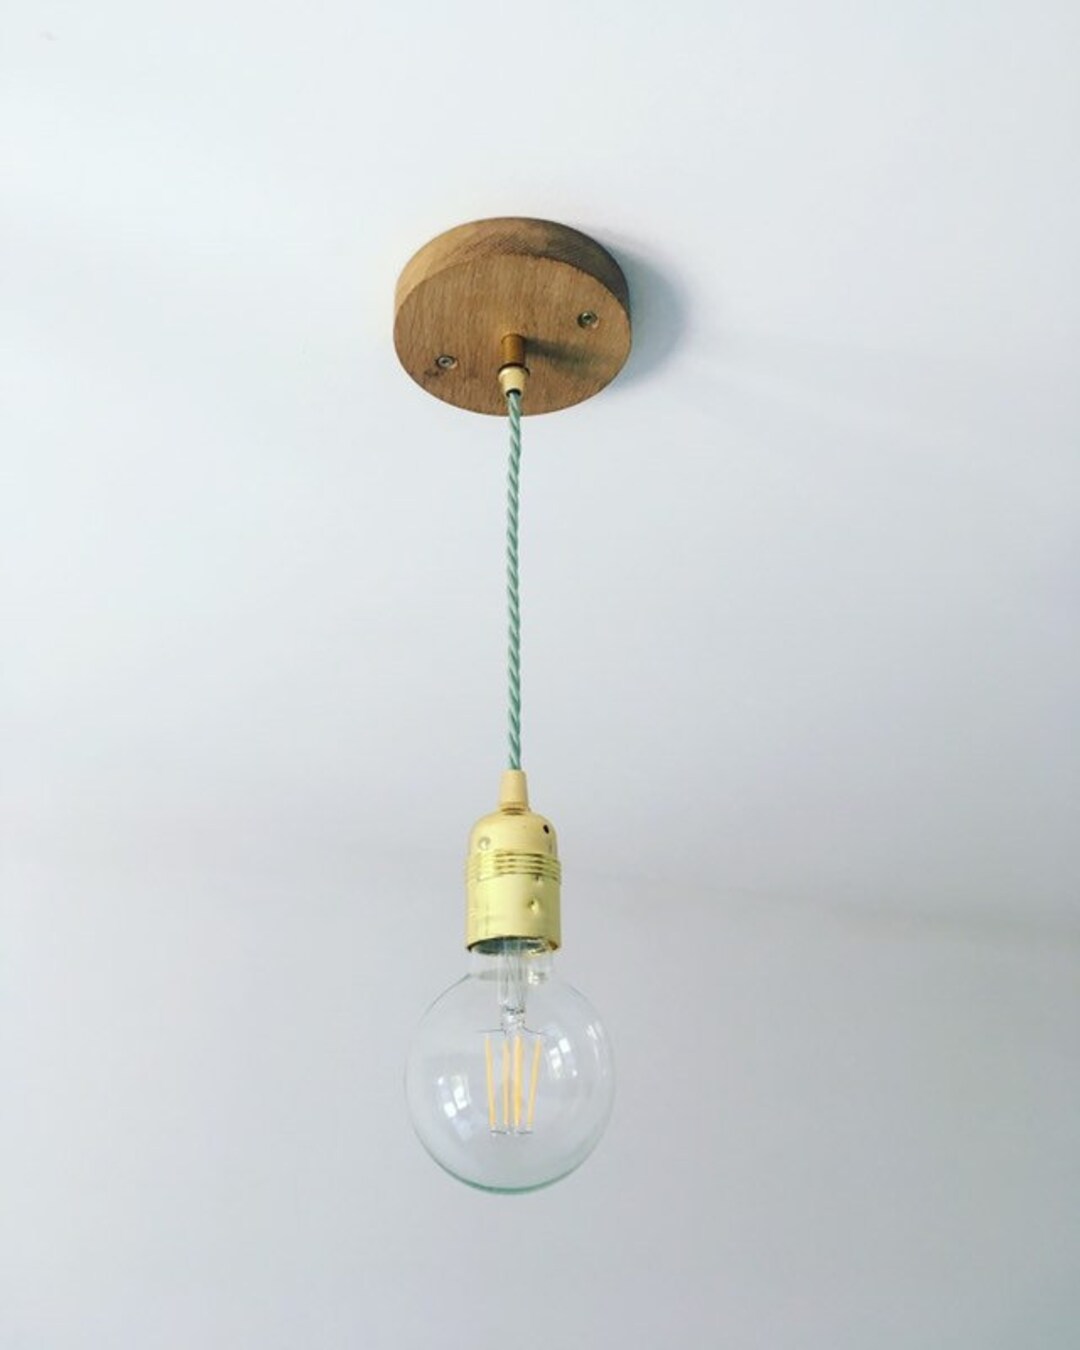 Ceiling Lighting Pendant Handmade Lights From the UK - Etsy